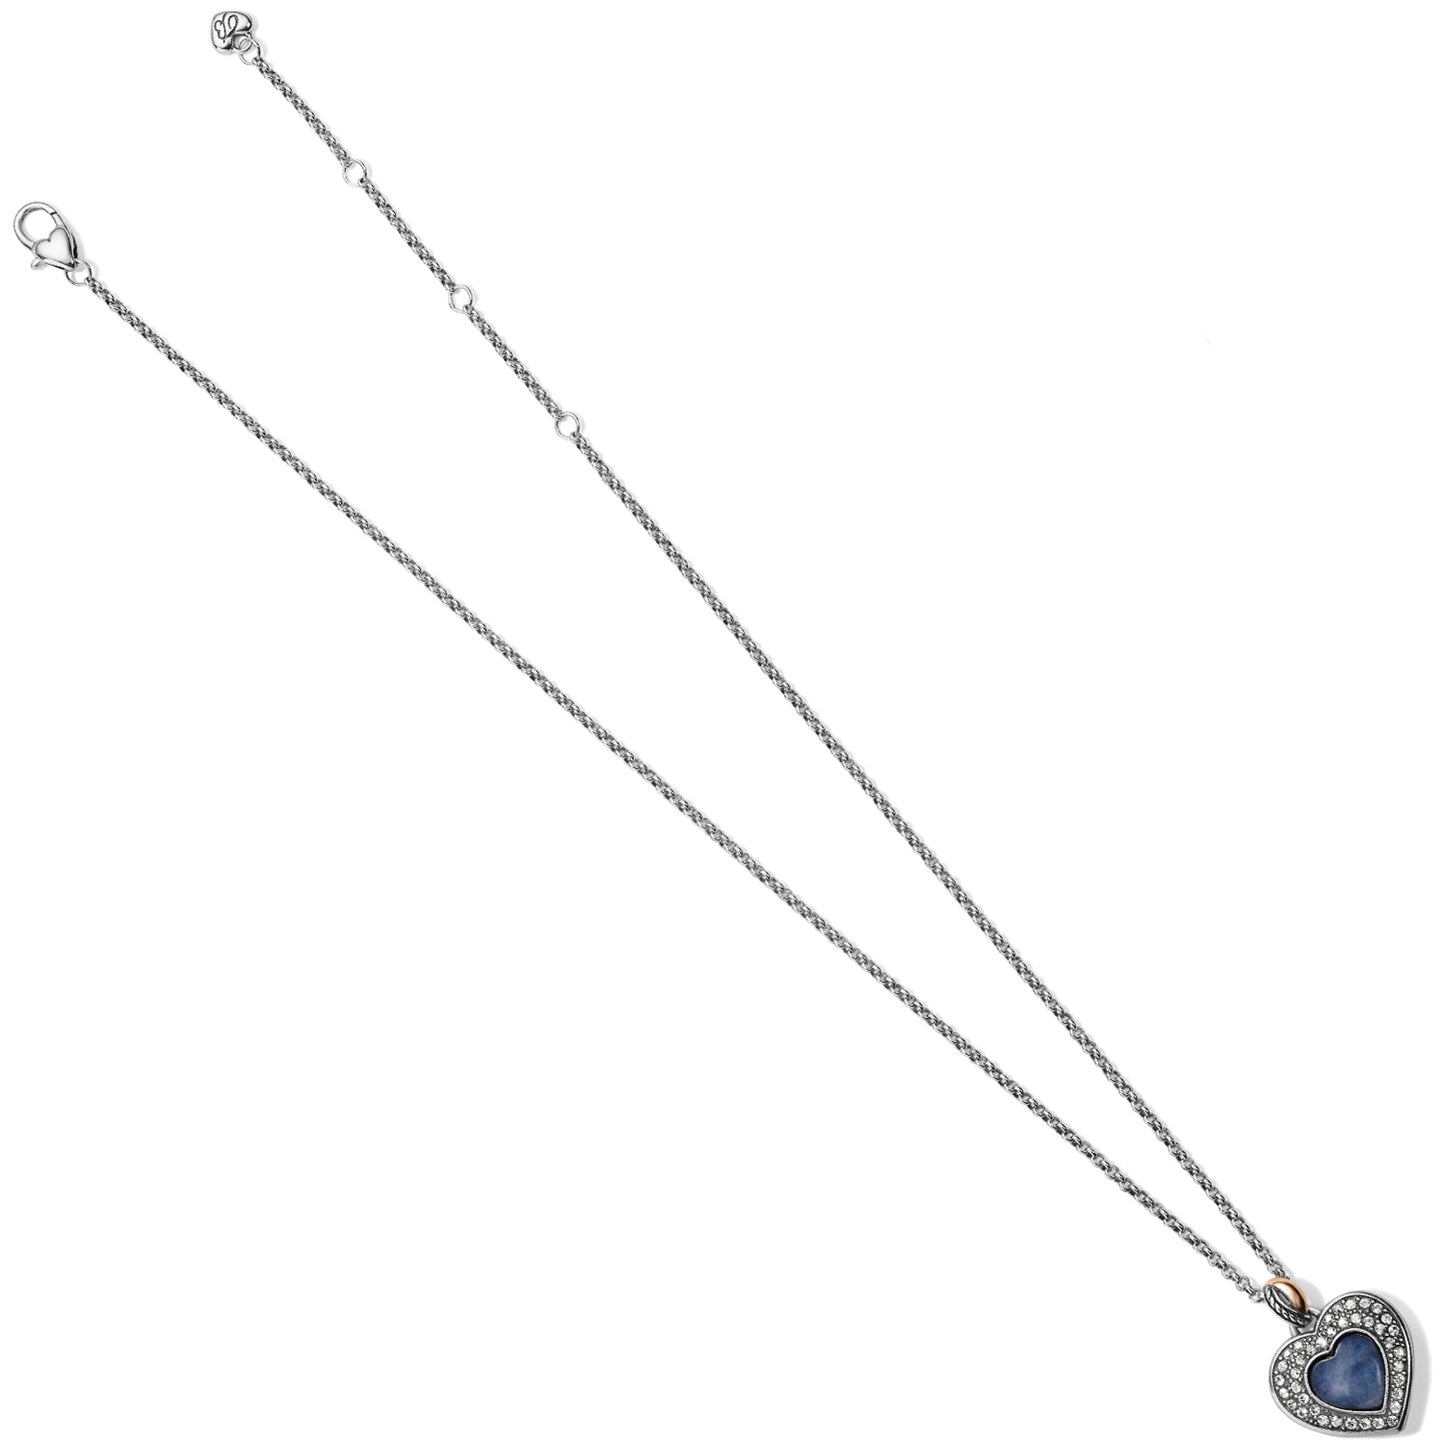 Brighton Neptune's Rings Brazil Blue Quartz Heart Reversible Necklace